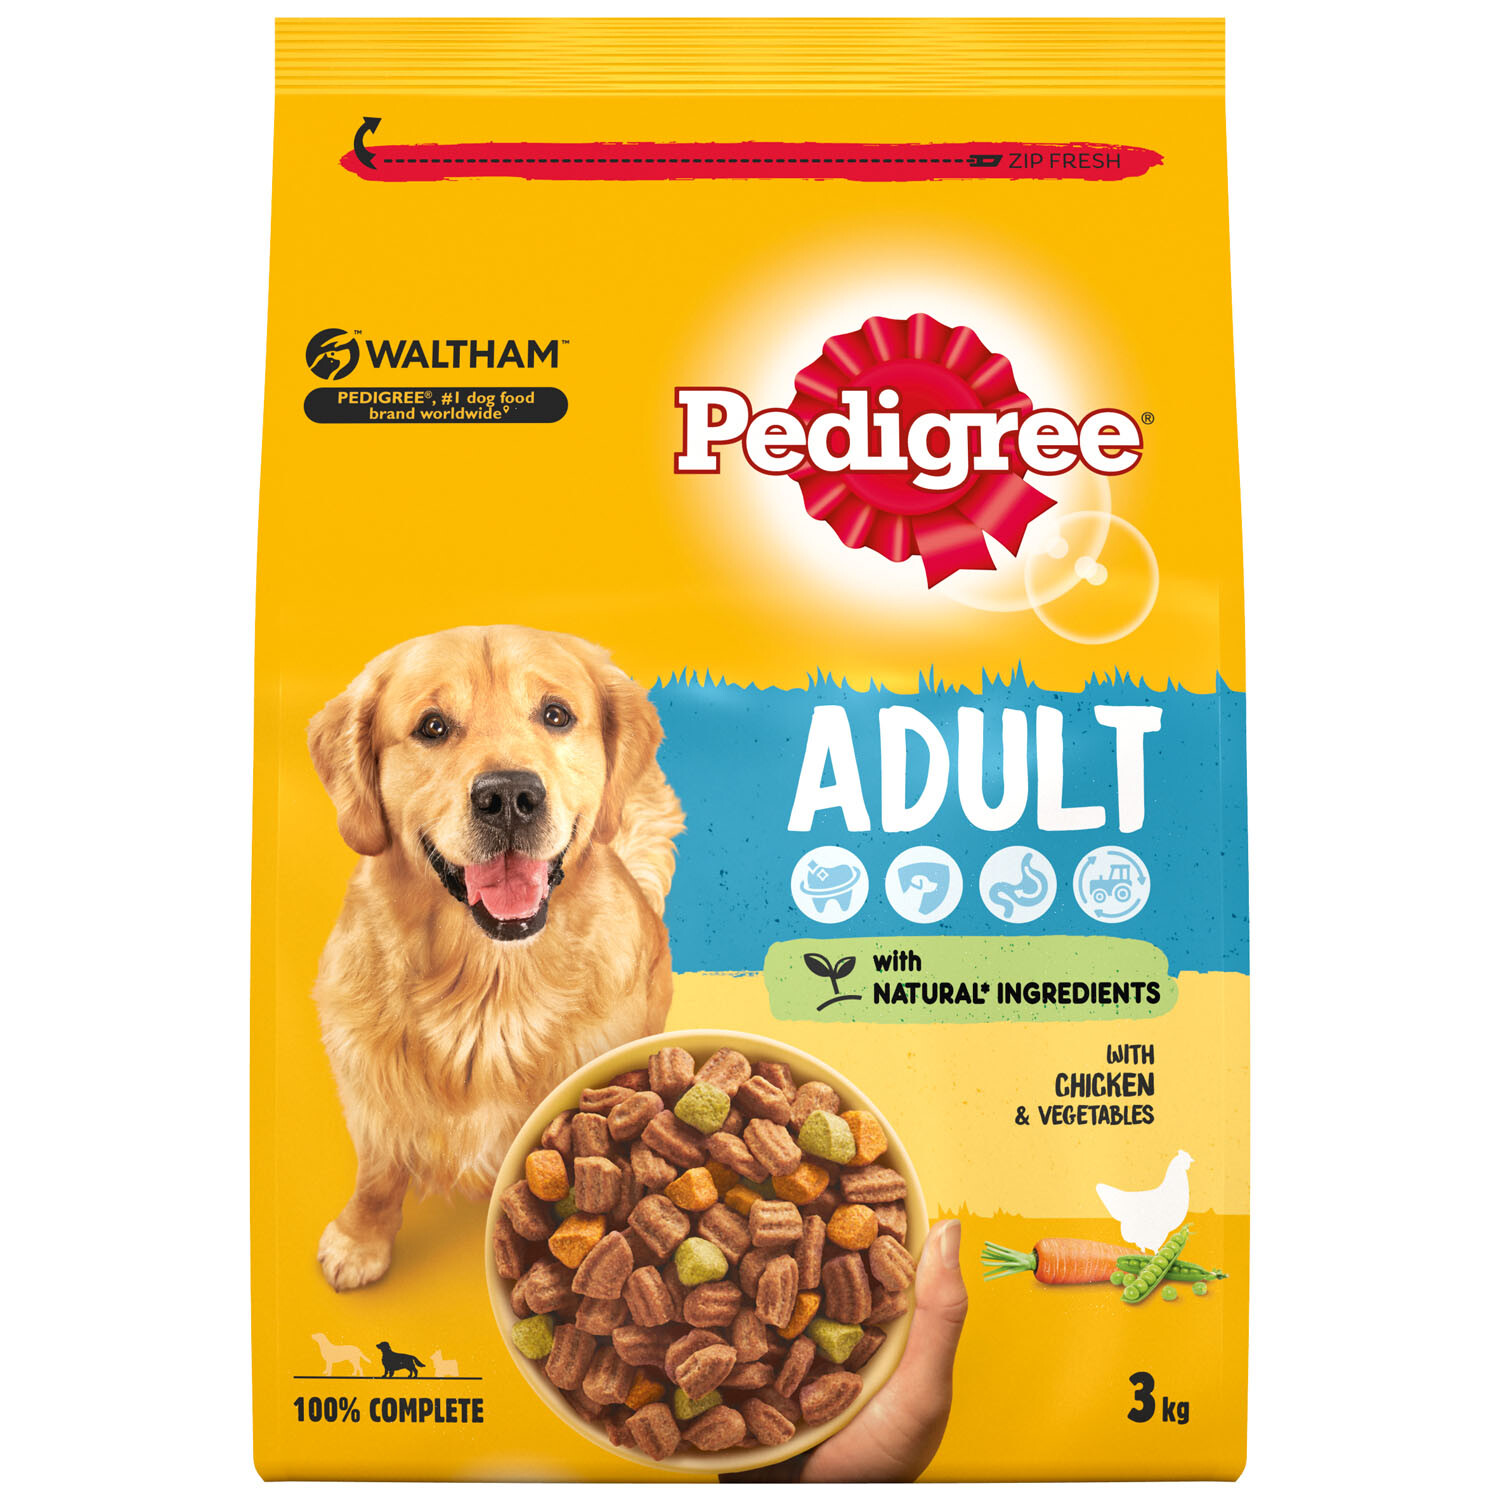 Pedigree Complete Chicken and Vegetables Adult Dry Dog Food 3kg Image 3